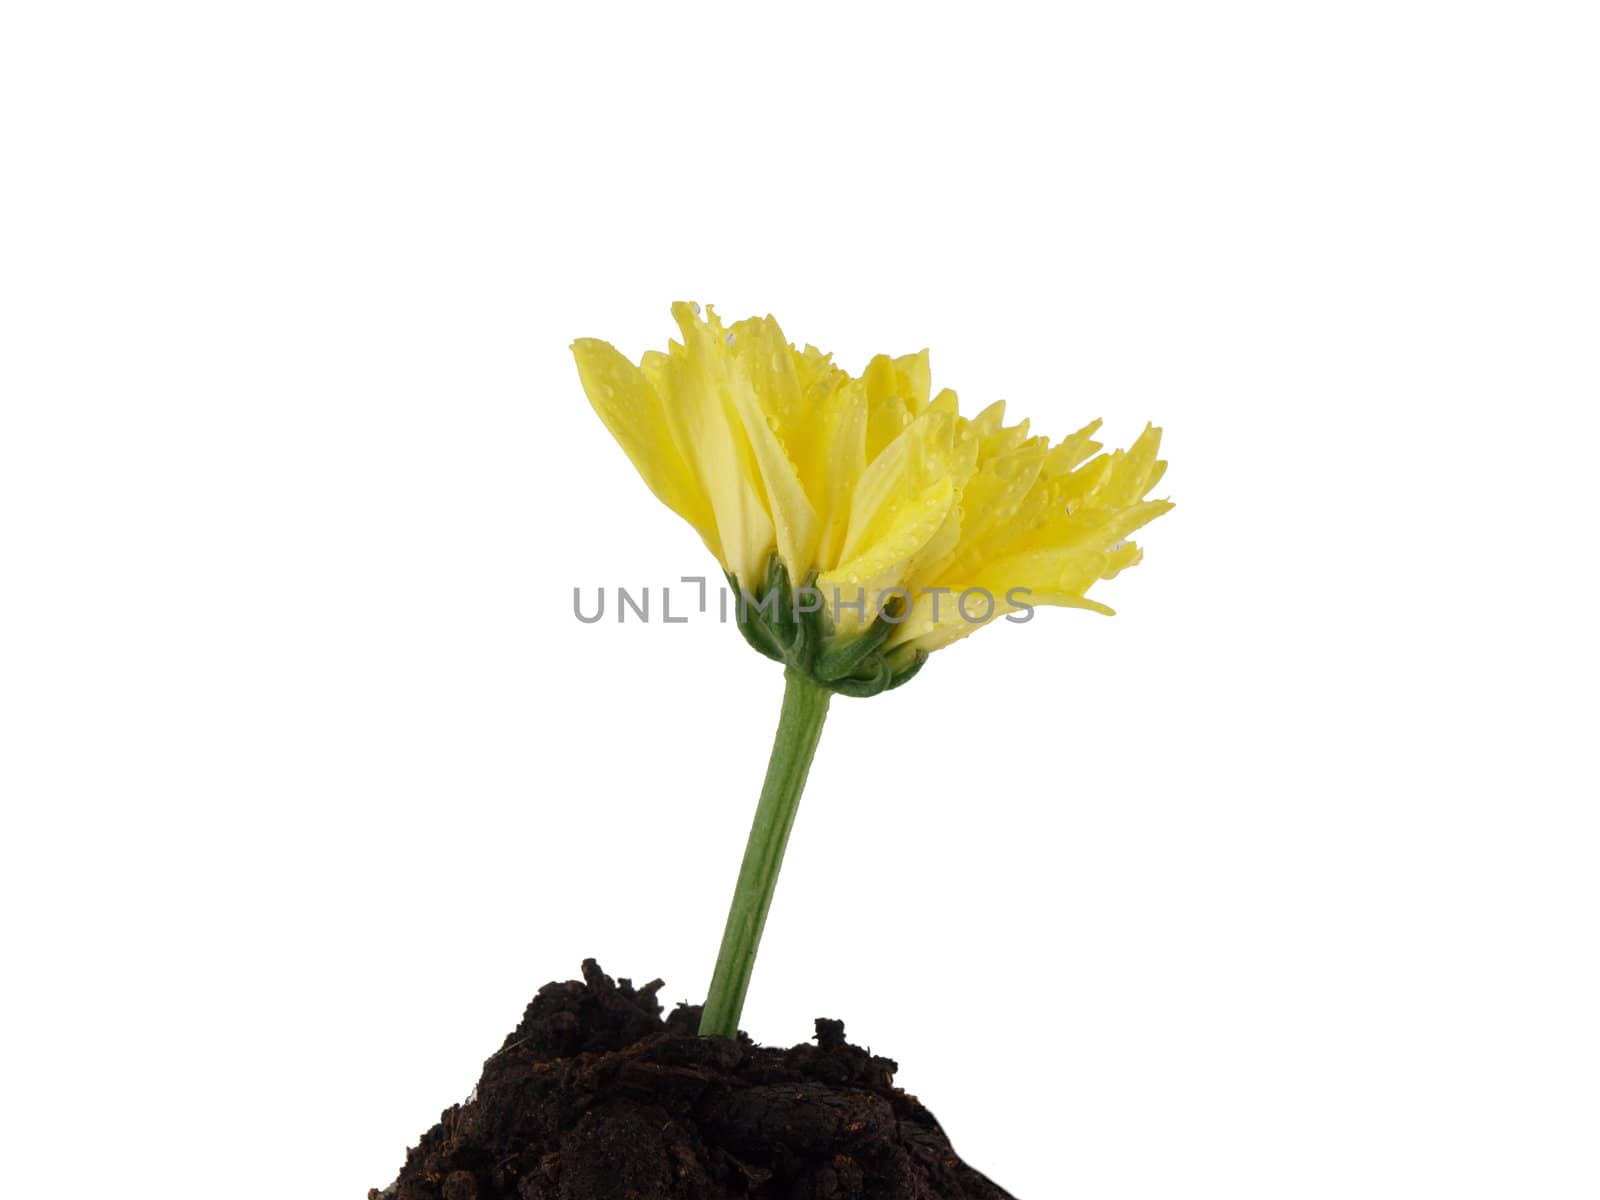 Yellow flower in soil by jakgree